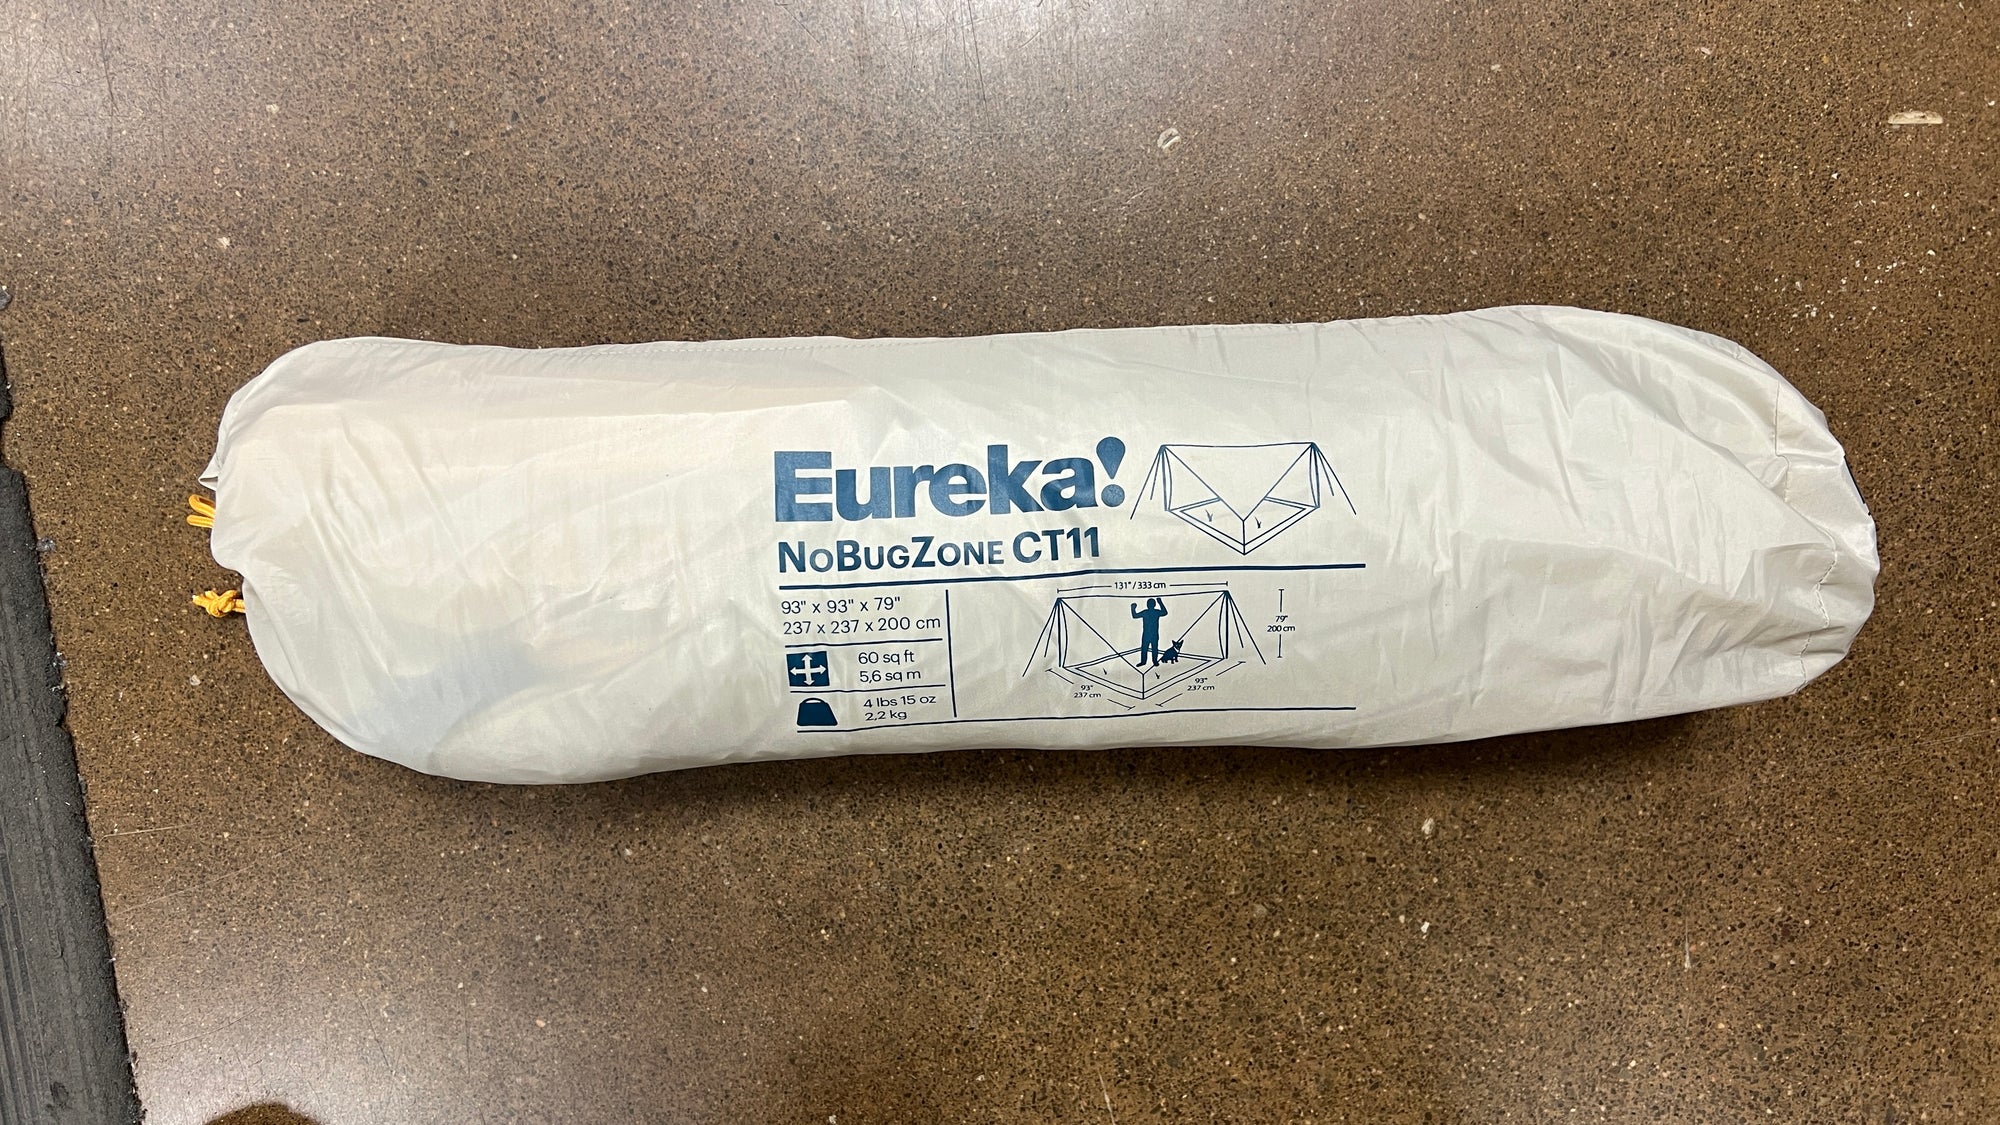 Eureka NoBugZone T11 - Scratch & Dent